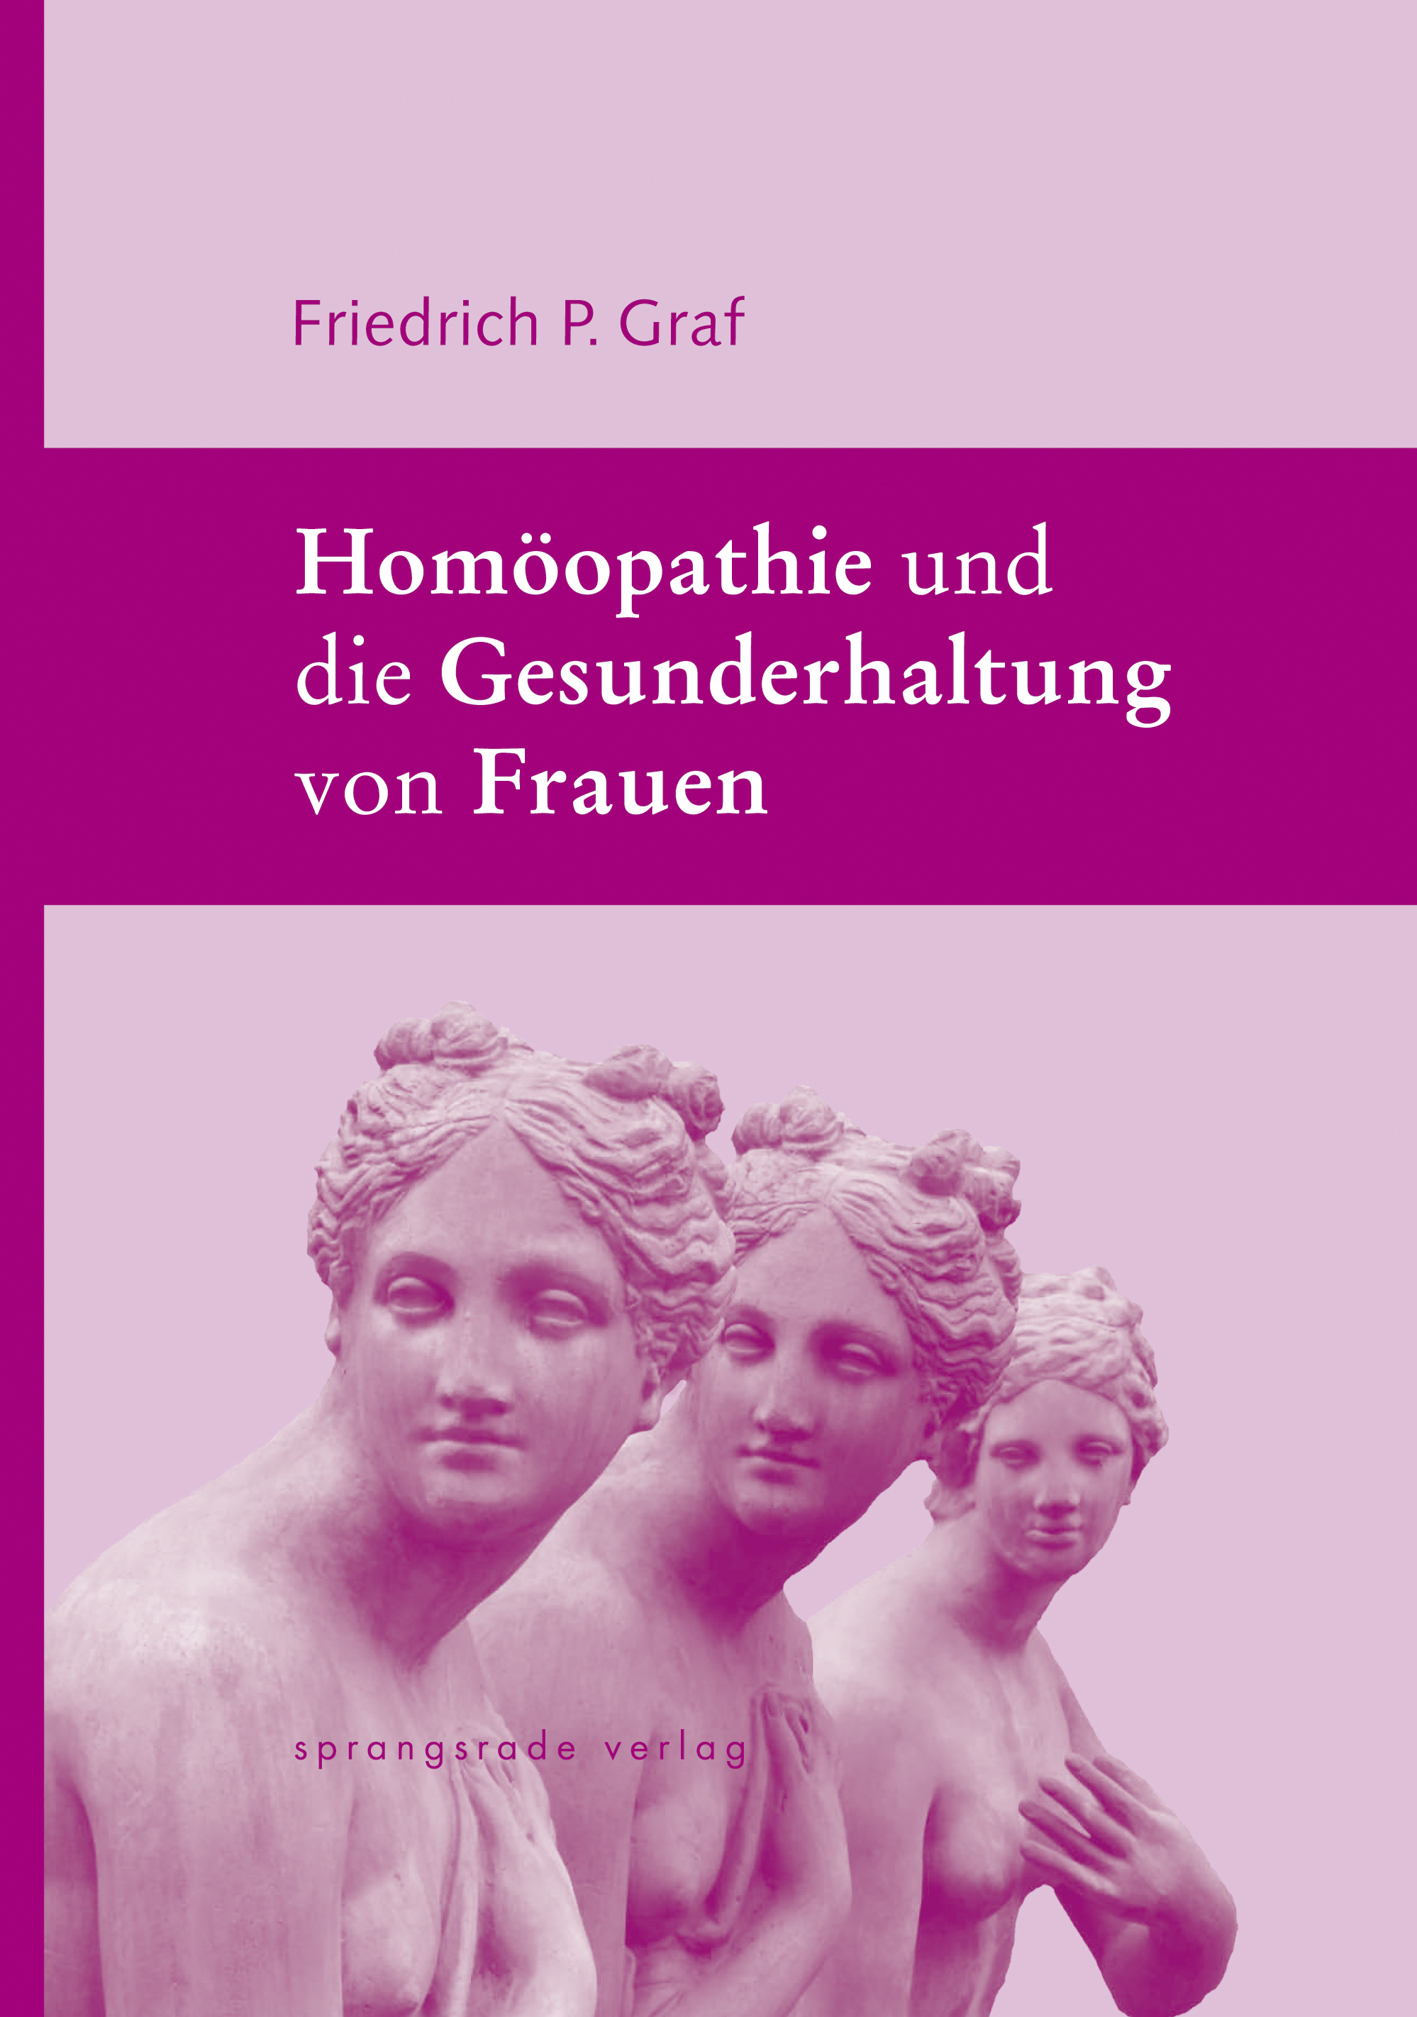 Homöopathie und die Gesunderhaltung von Frauen Friedrich P. Graf - Picture 1 of 1